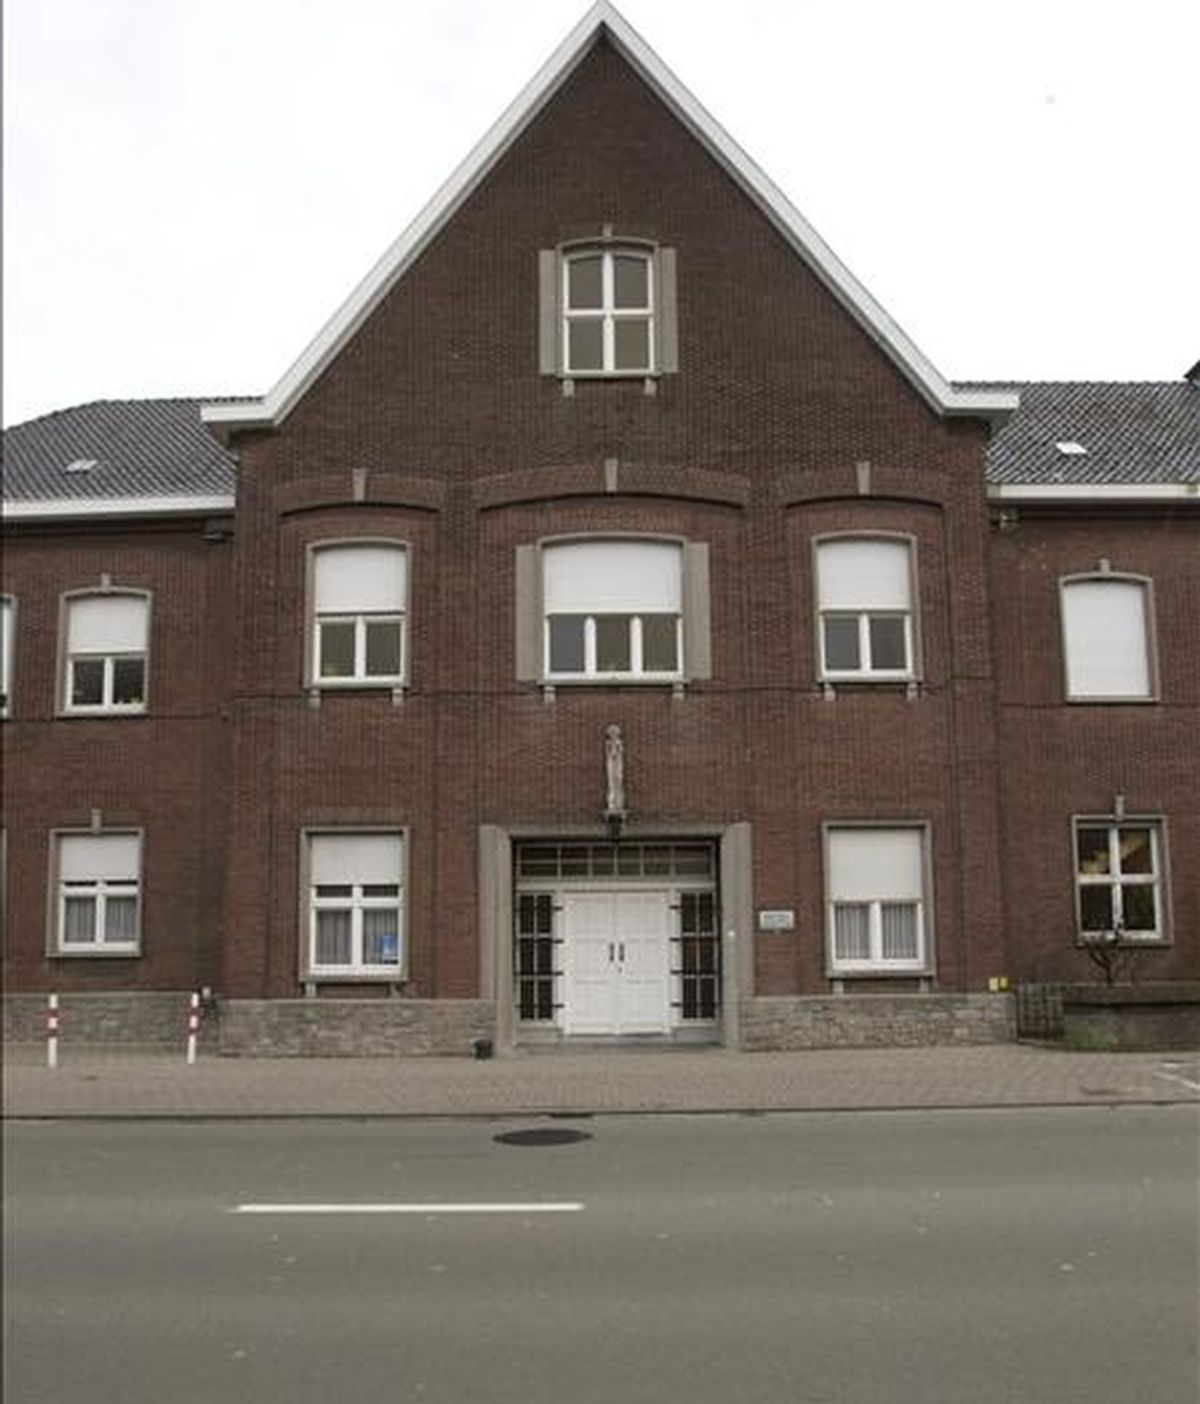 Vista de la fachada del orfanato Stella Maris de Courtrai (Bélgica), es objeto de investigaciones por supuestos casos de abuso infantil cometido por algunas monjas hace 40 años, según han informado medios belgas. EFE